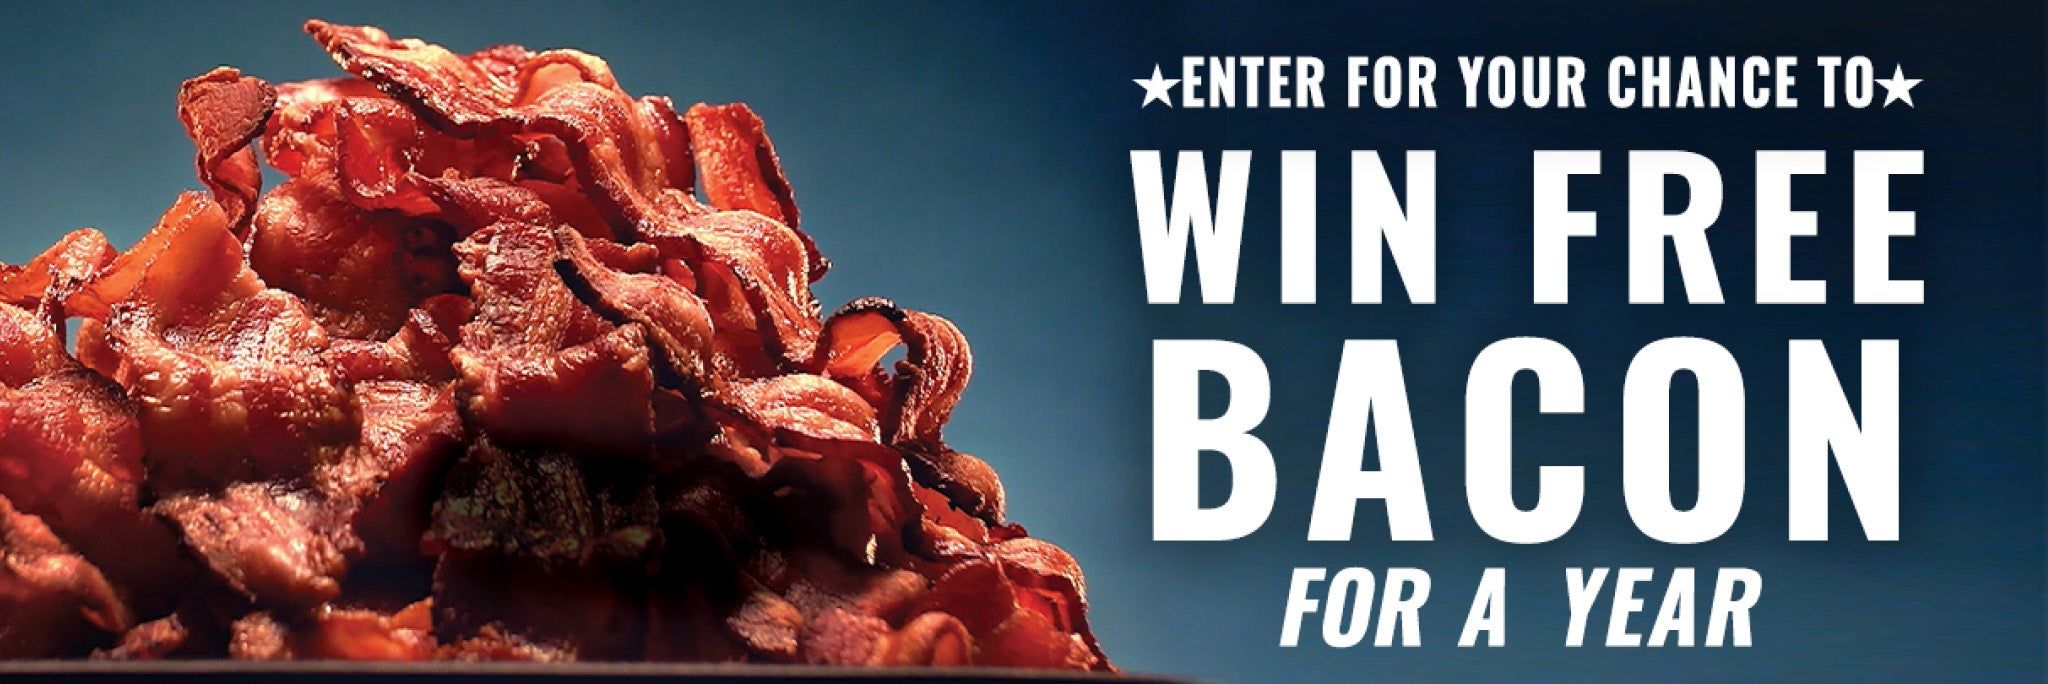 Win free bacon